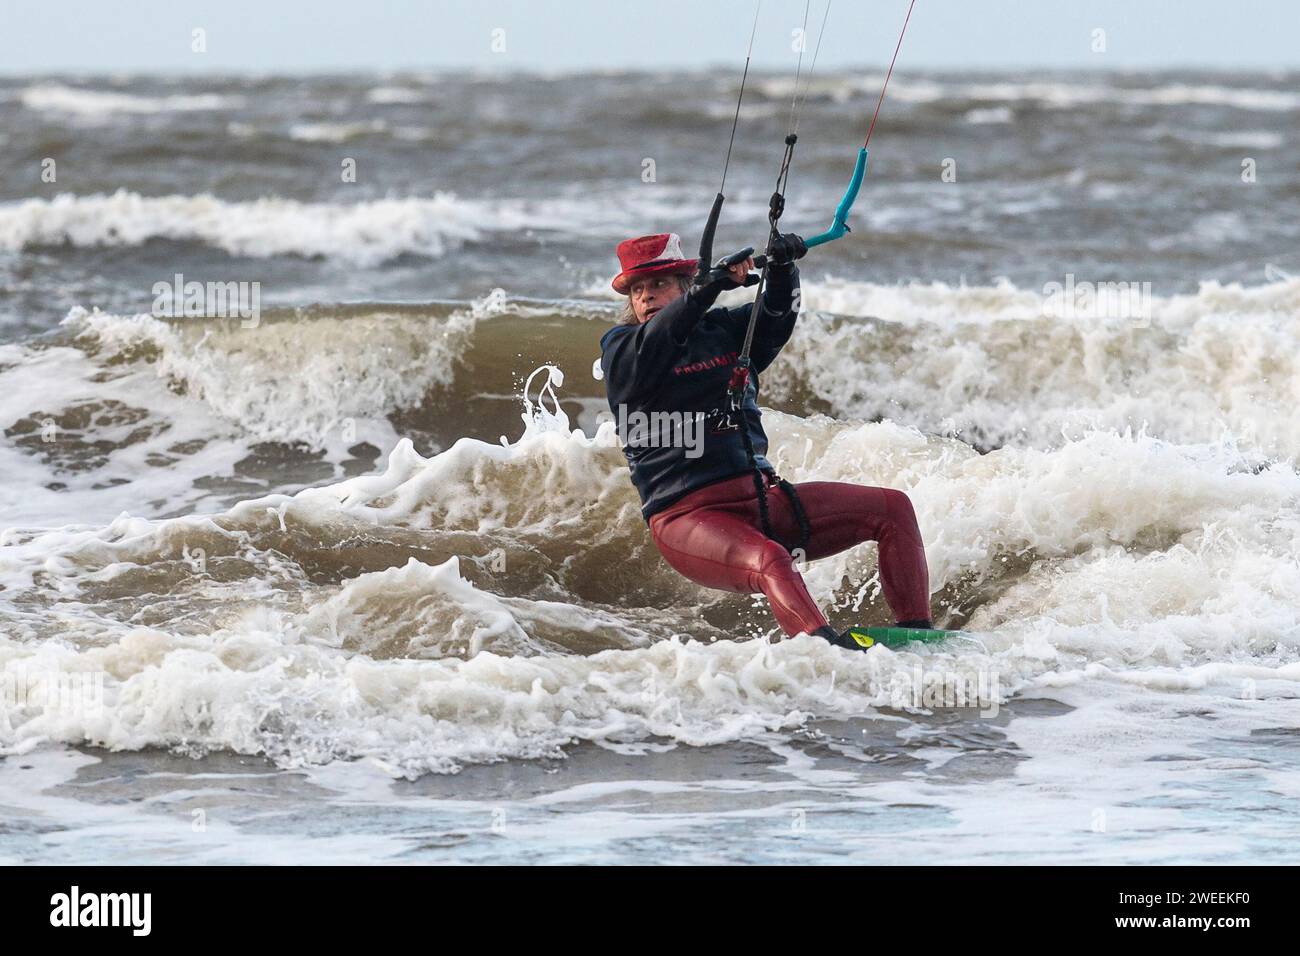 Kitesurfer profitieren von starken Winden, da Schottland aufgrund des benannten Sturms Jocelyn im ganzen Land starke Winde hat. Quelle: Euan Cherry Stockfoto